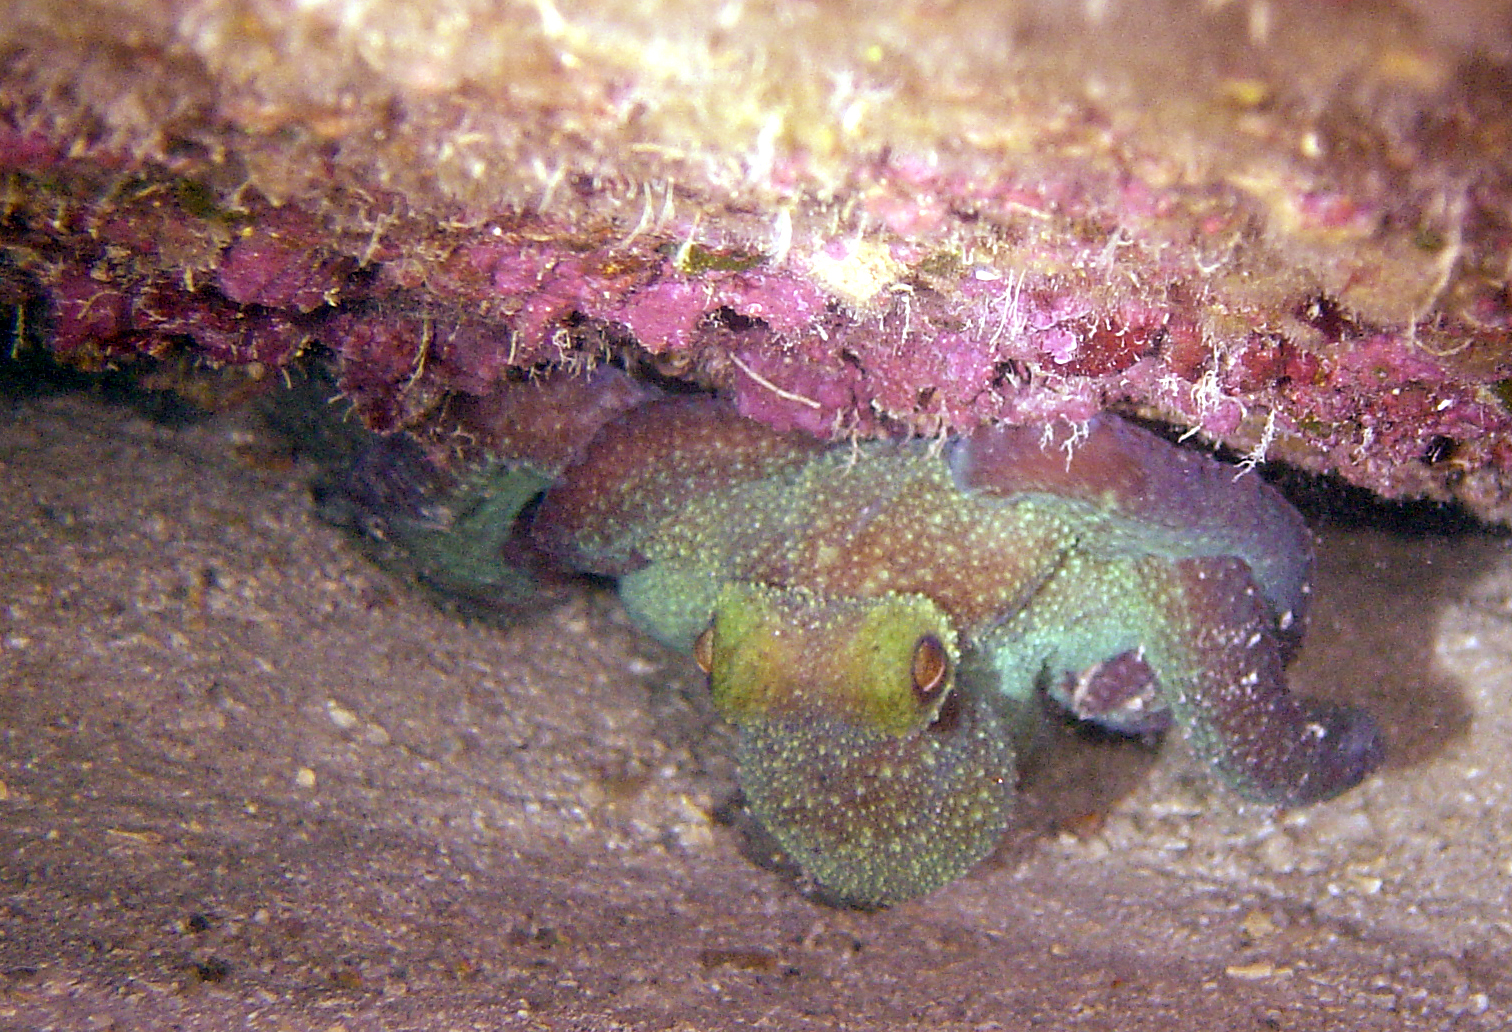 Octopus. Roatan, Honduras. October 2005